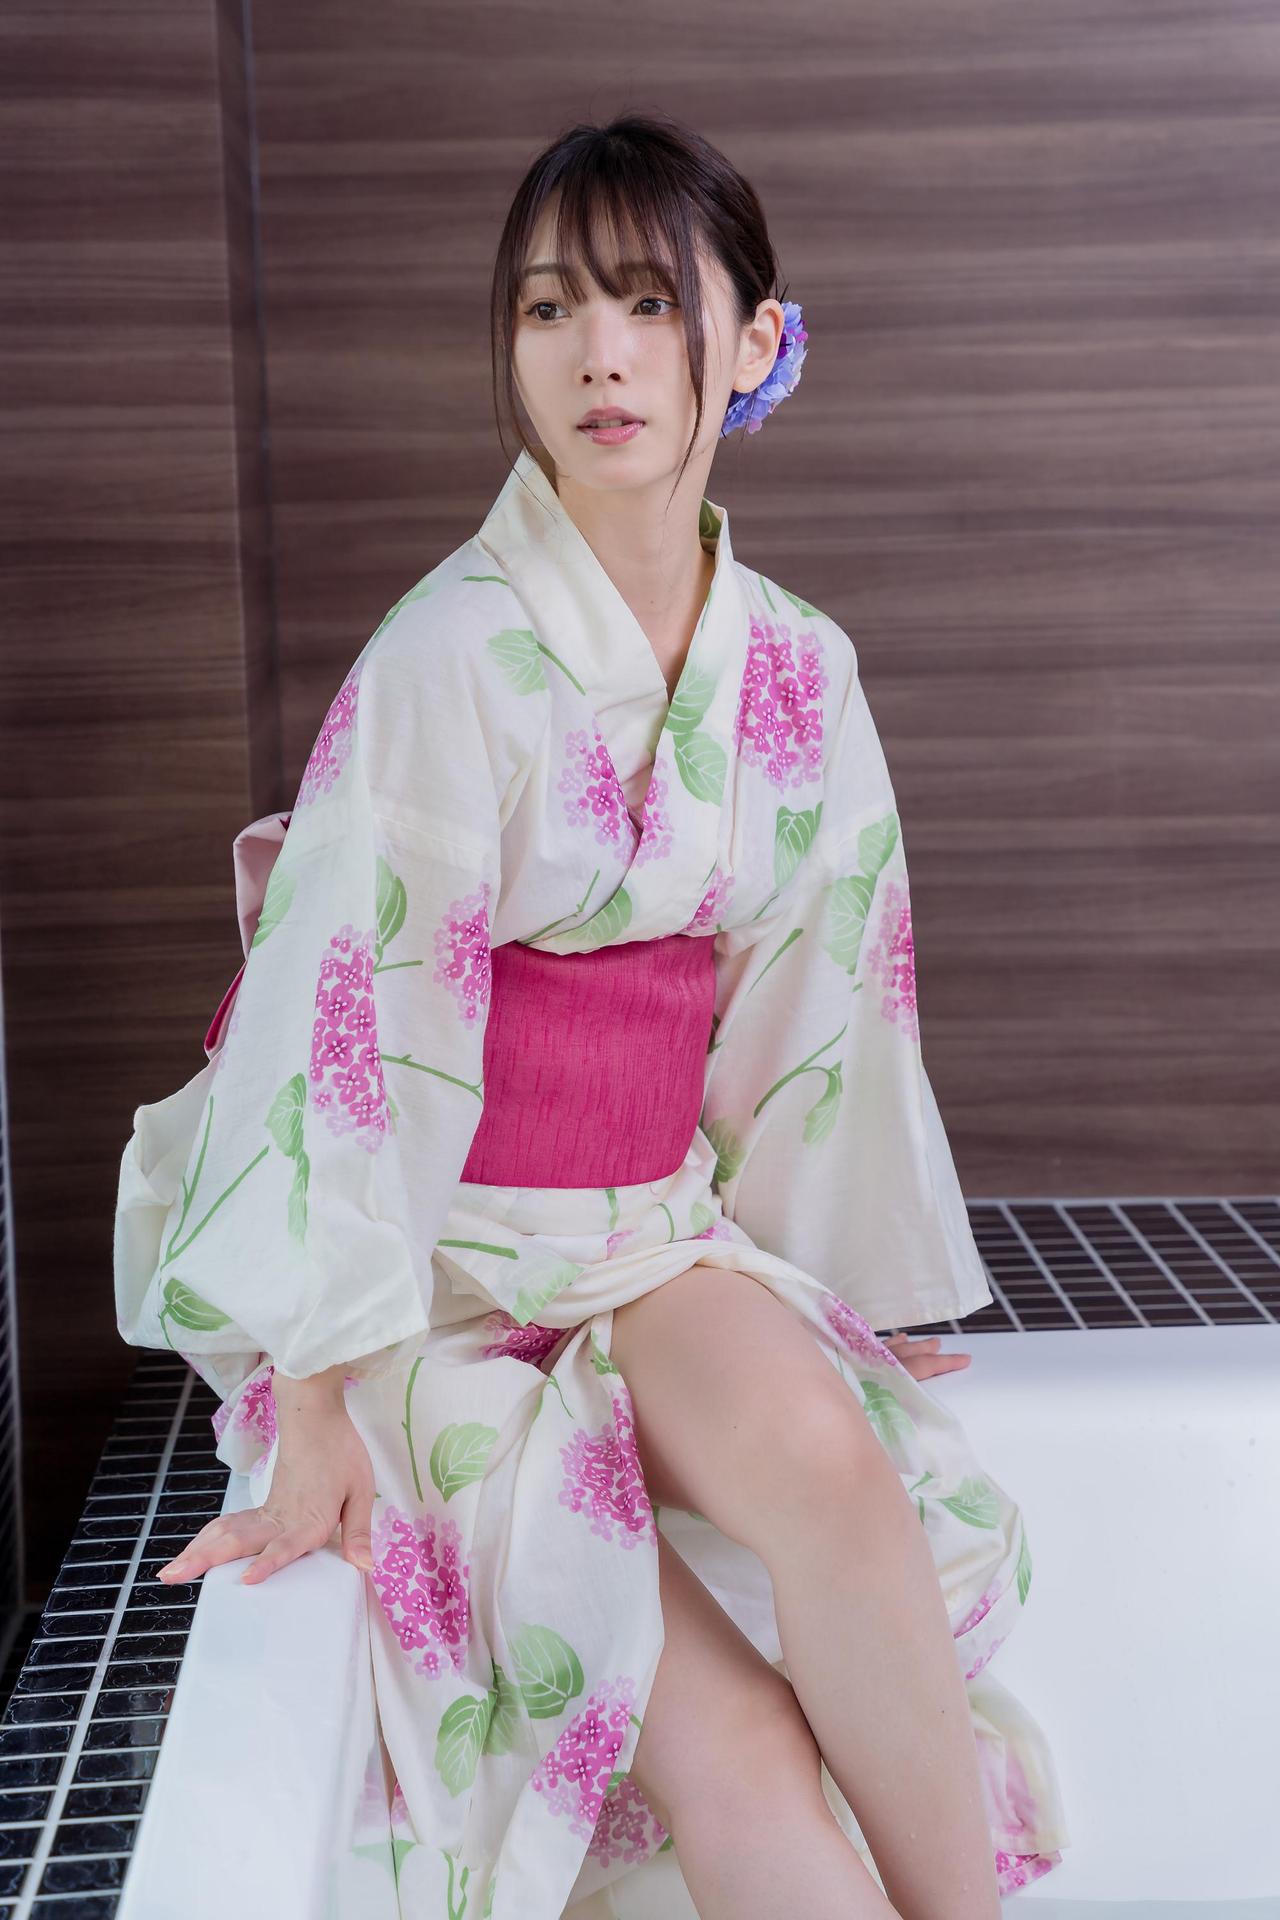 Mitsuki Goronzoku ゴロン族美月 フェチグラビア写真集 「translucent」 Set 03 Share Erotic Asian Girl Picture